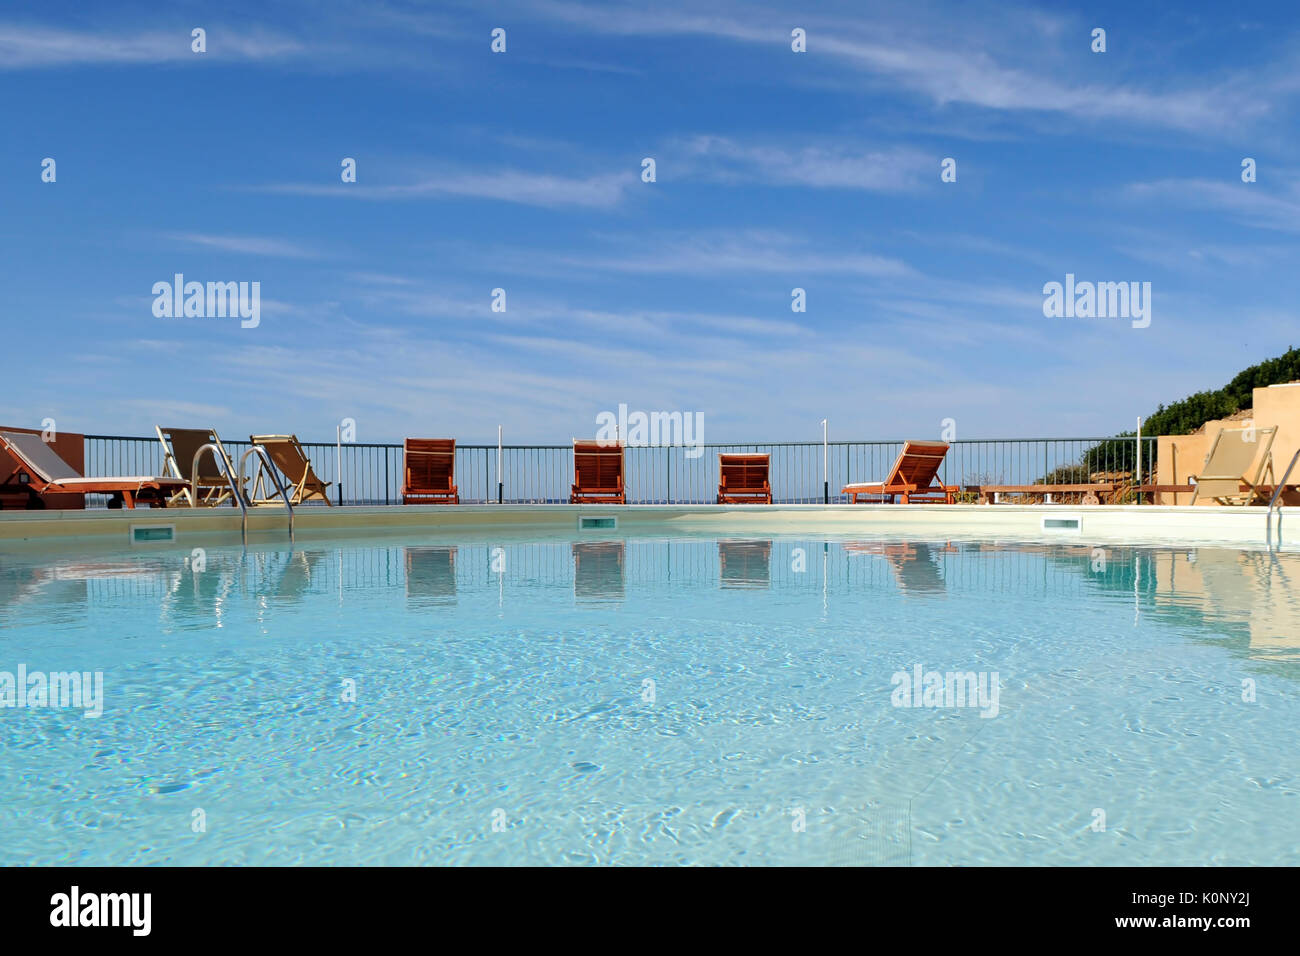 Une image horizontale d'une piscine extérieure avec une gamme de fauteuils à une vacation resort sur l'île de Sardaigne, Italie Banque D'Images